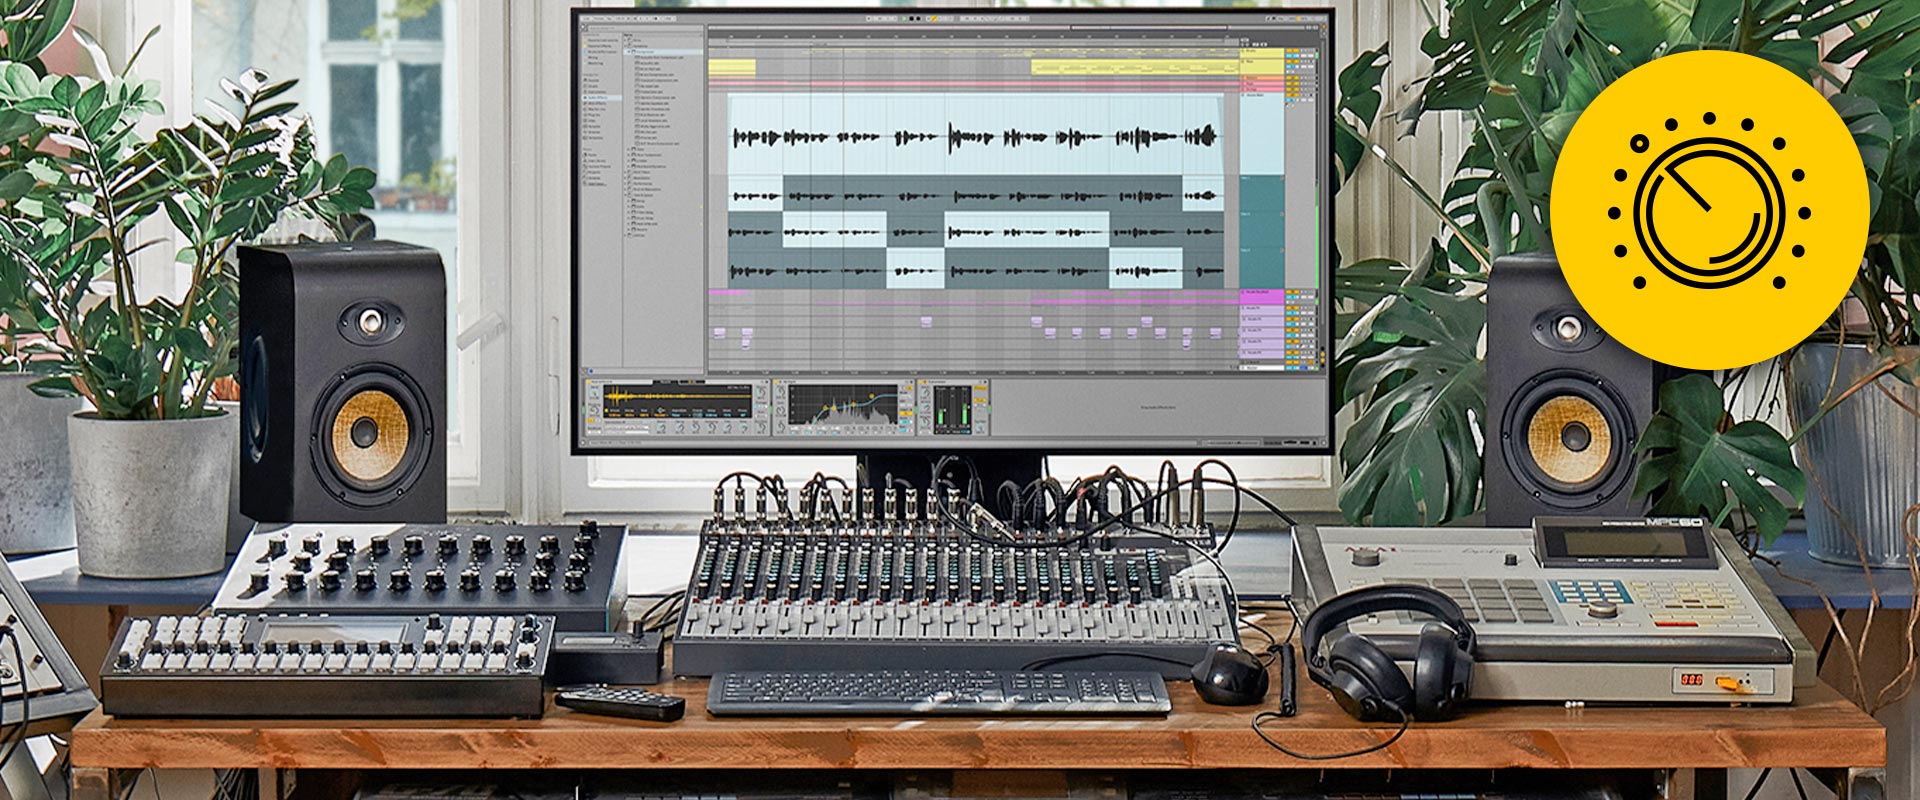 Formation mixage audio, les techniques professionnelles